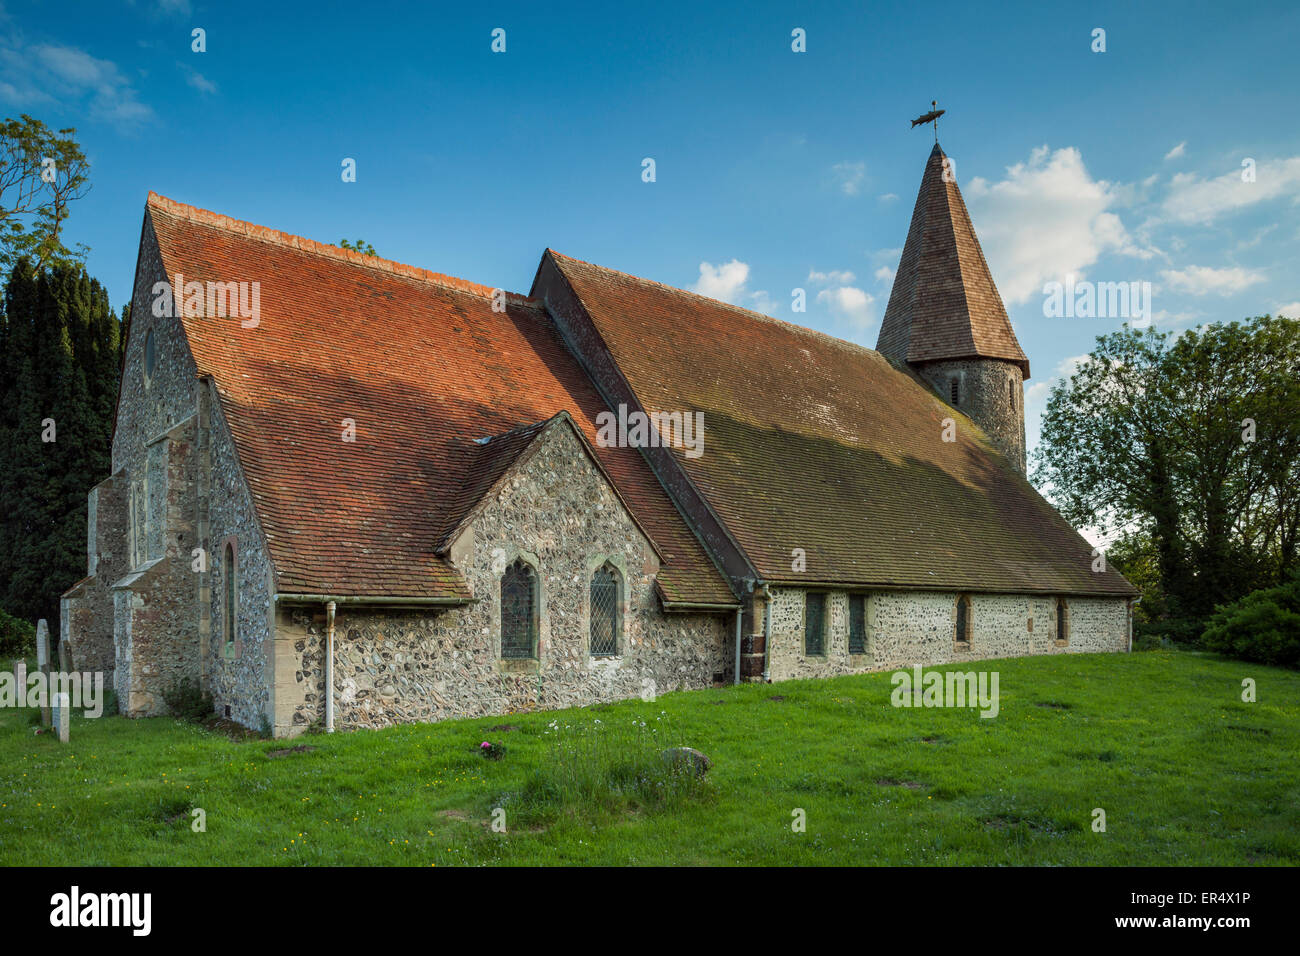 Soirée de printemps à Piddinghoe l'église du village dans l'East Sussex, Angleterre. Banque D'Images